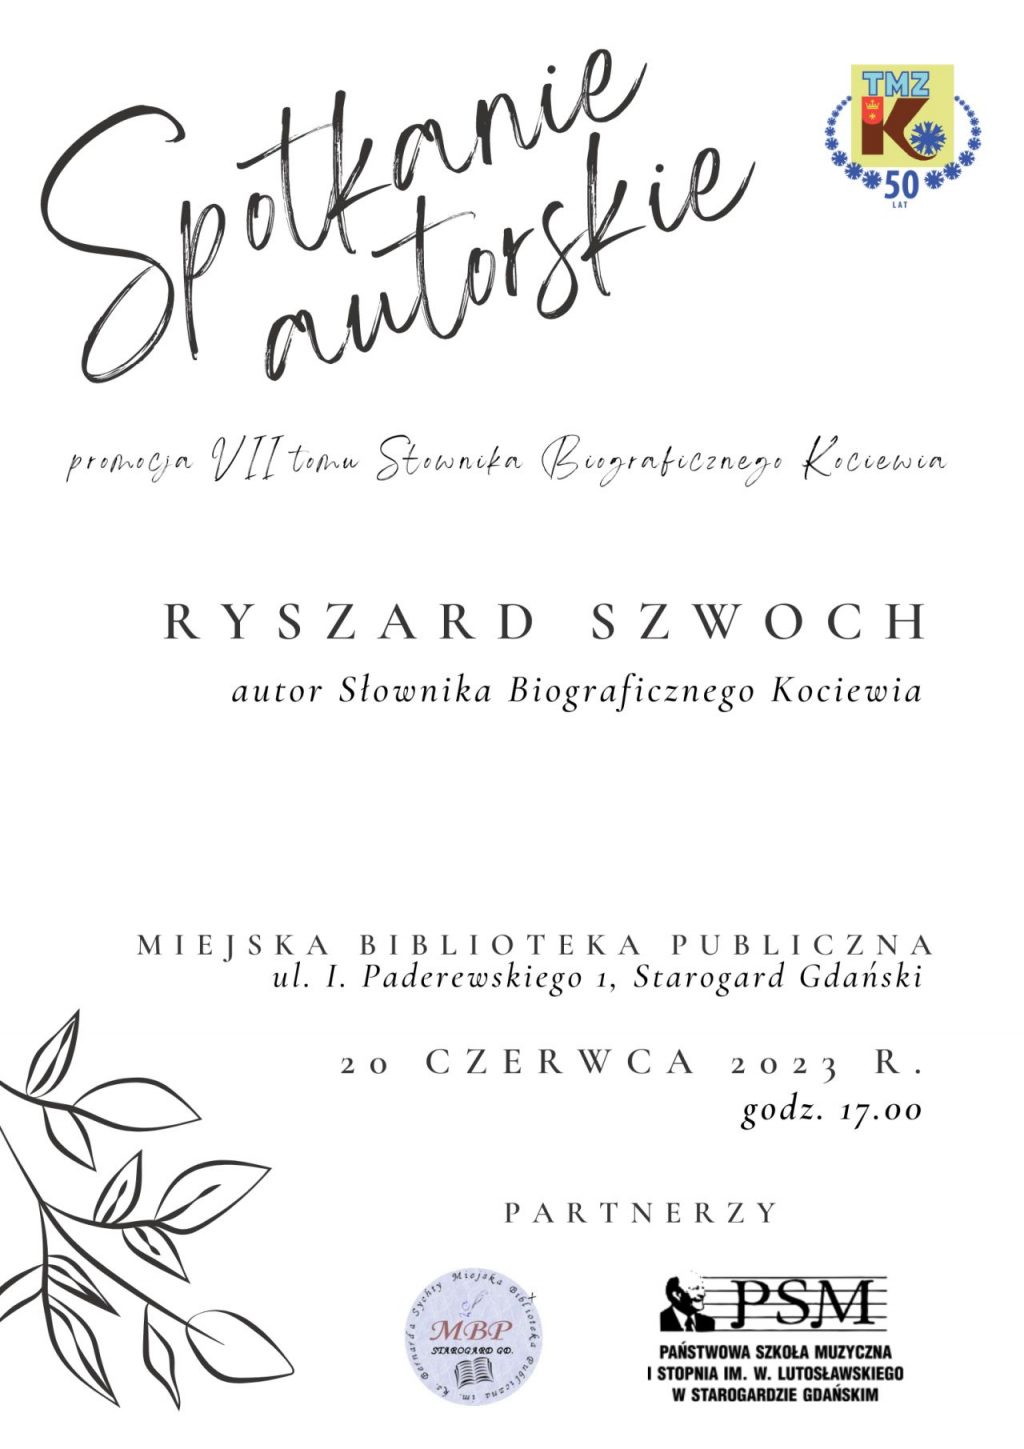 Plakat zawiera informację na temat spotkania autorskiego z panem Ryszardem Szwochem 20 czerwca 2023 roku